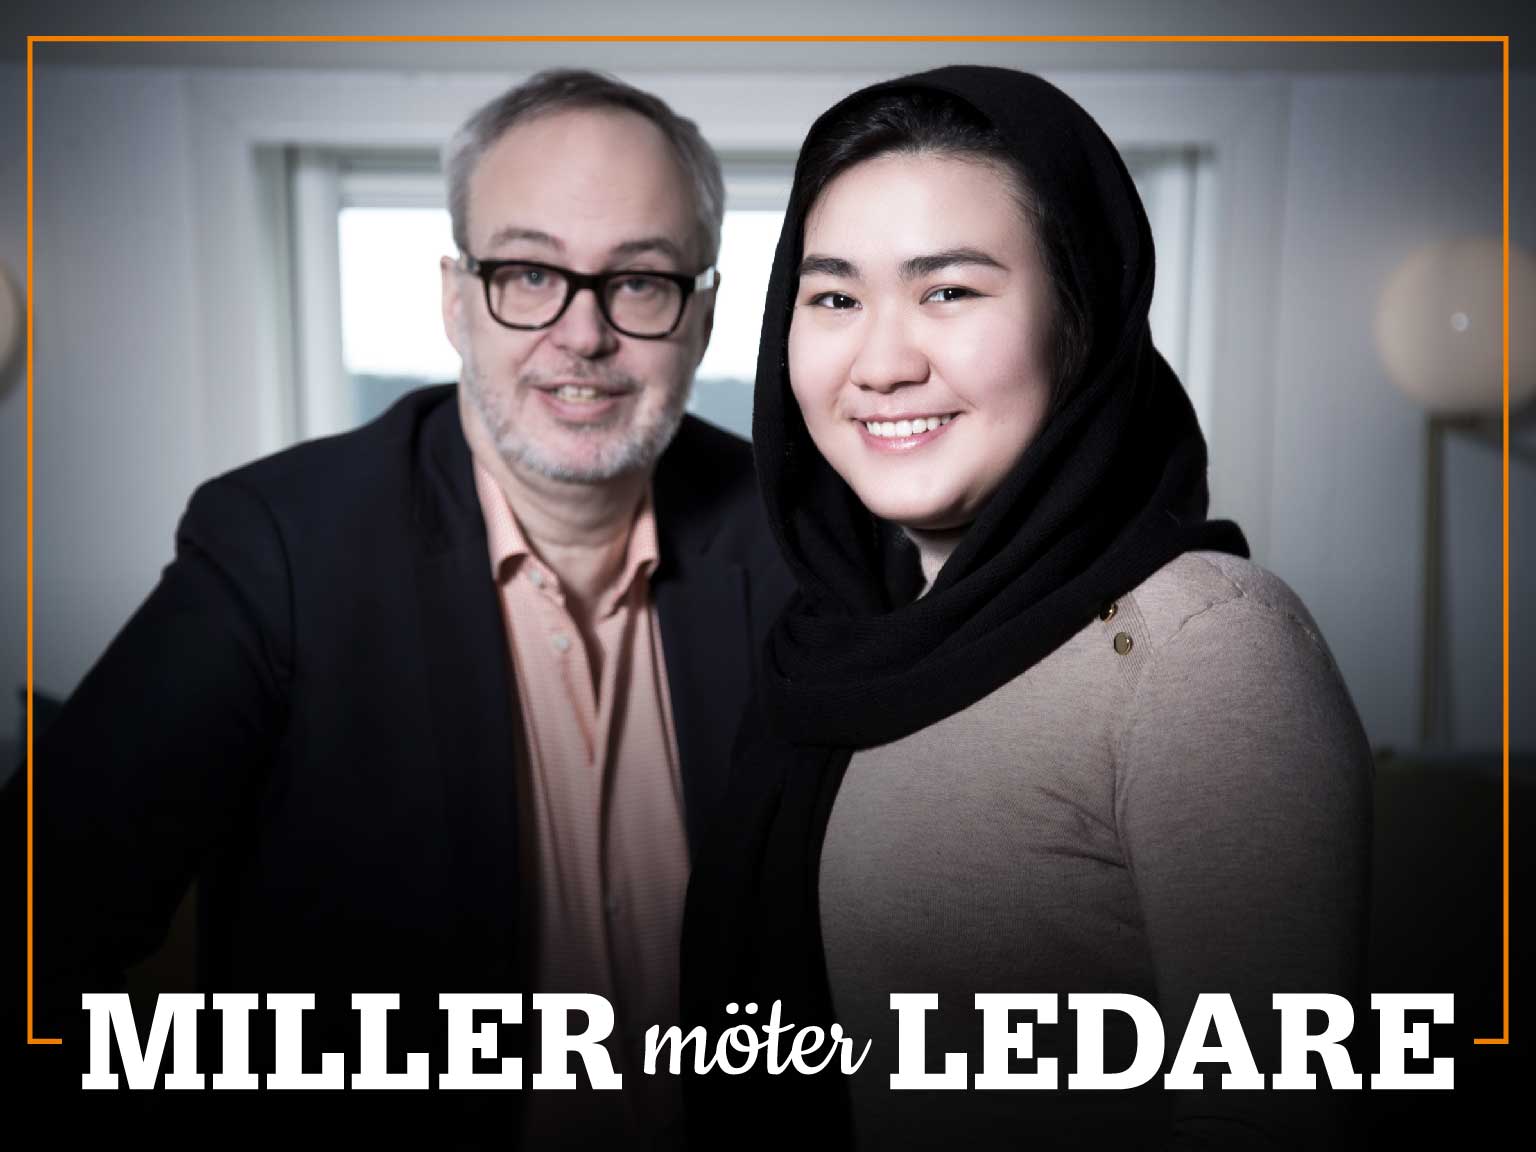 Omslag för podden Miller möter ledare – bild på Andreas Miller och Fatemeh Khavari.